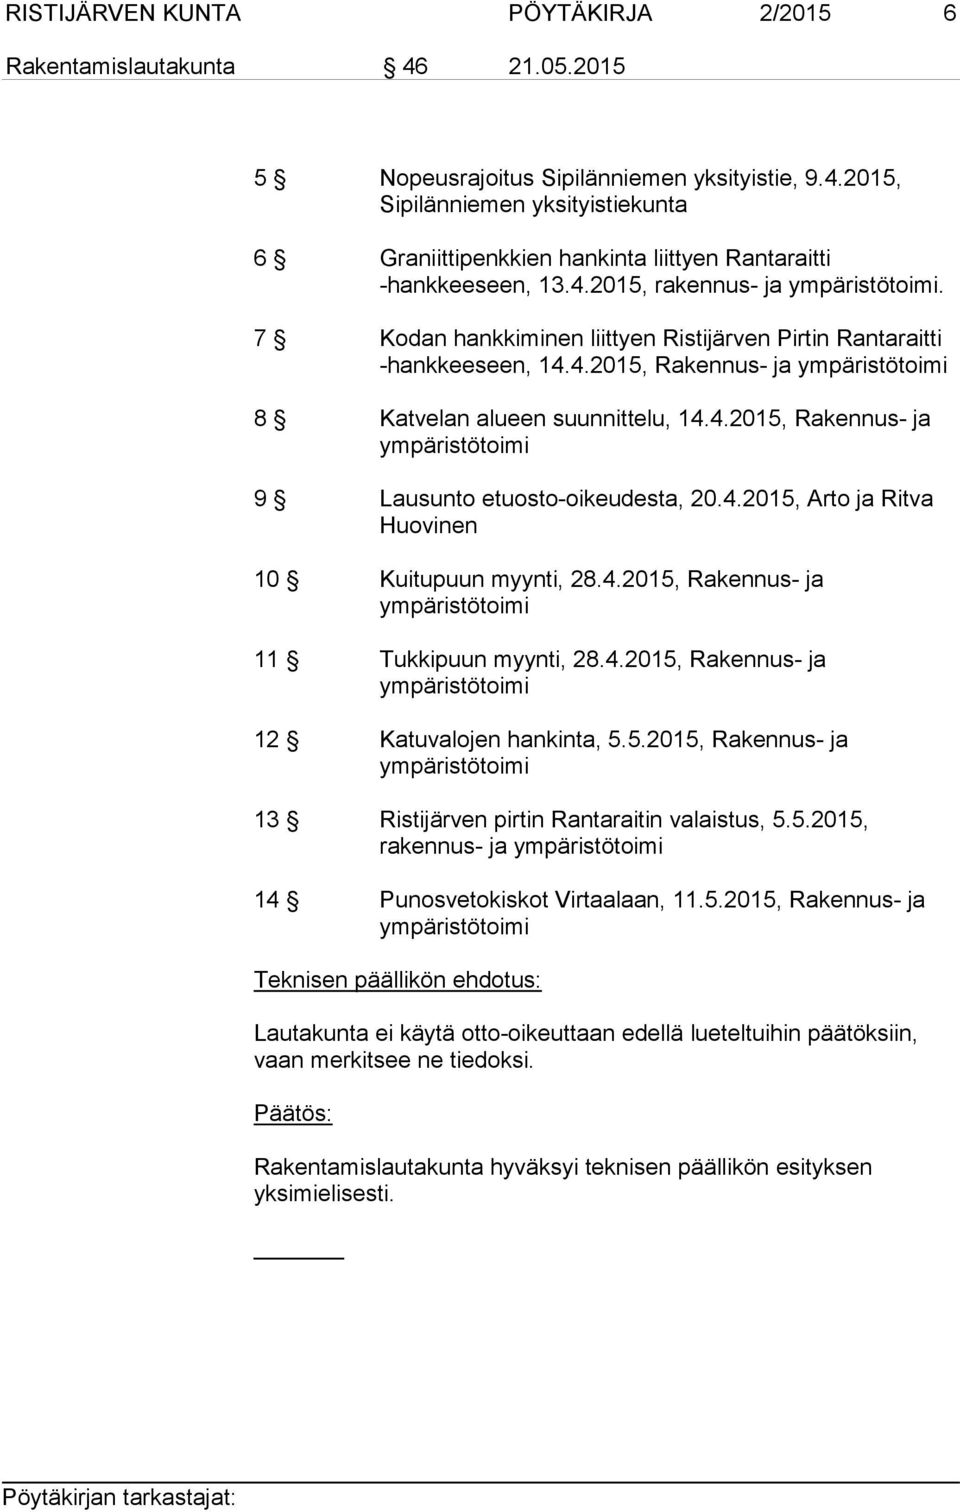 4.2015, Arto ja Ritva Huovinen 10 Kuitupuun myynti, 28.4.2015, Rakennus- ja ympäristötoimi 11 Tukkipuun myynti, 28.4.2015, Rakennus- ja ympäristötoimi 12 Katuvalojen hankinta, 5.5.2015, Rakennus- ja ympäristötoimi 13 Ristijärven pirtin Rantaraitin valaistus, 5.